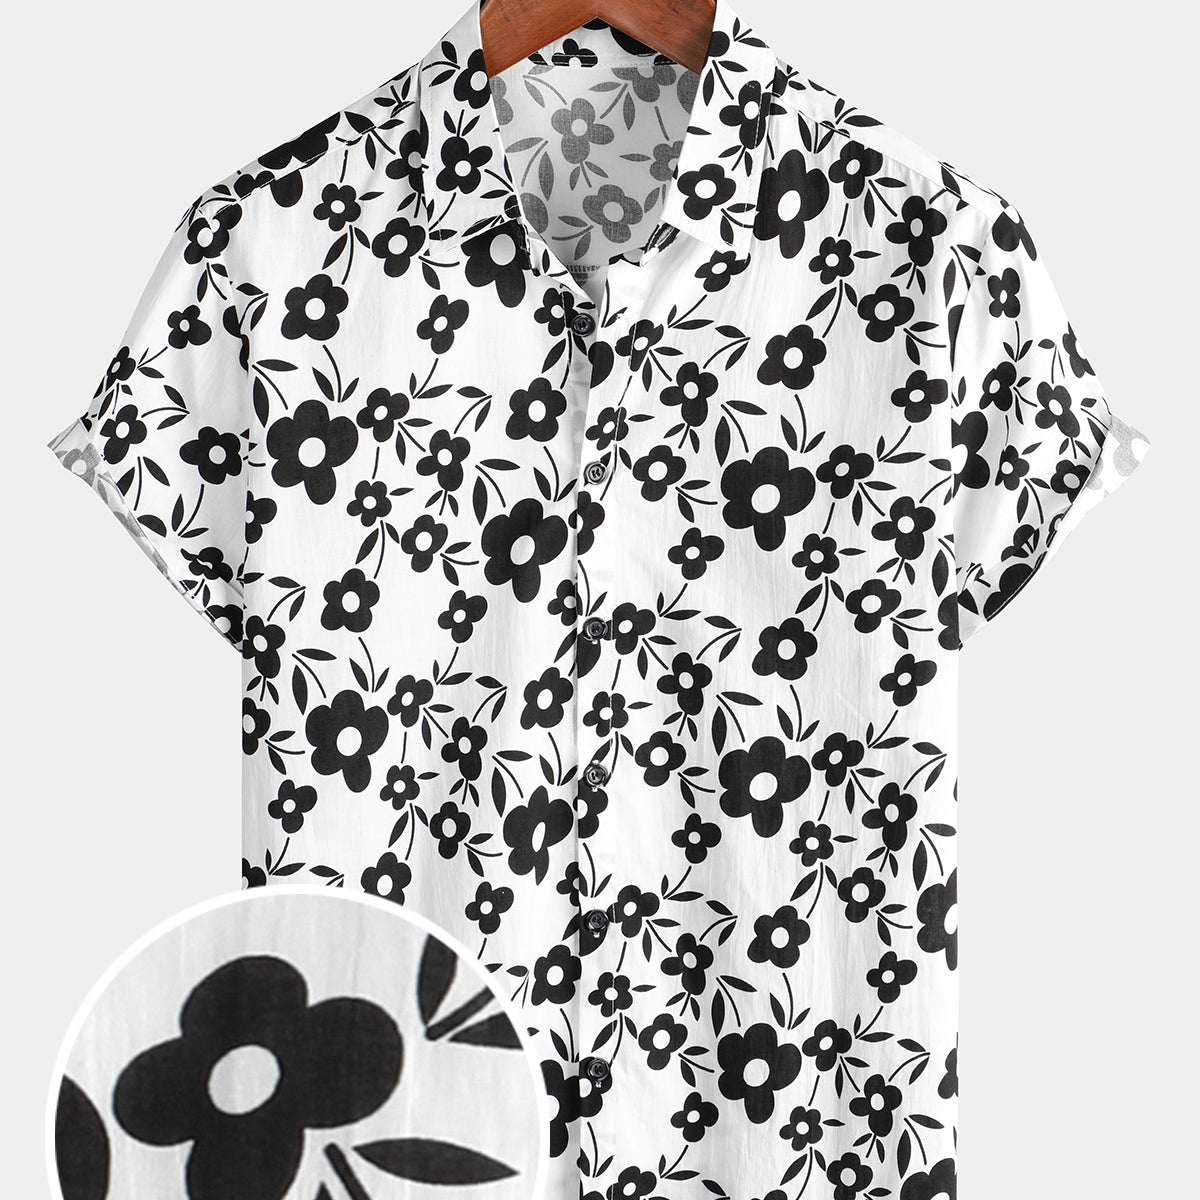 Camisa de manga corta tropical transpirable con botones de algodón blanco y negro de verano floral para hombre